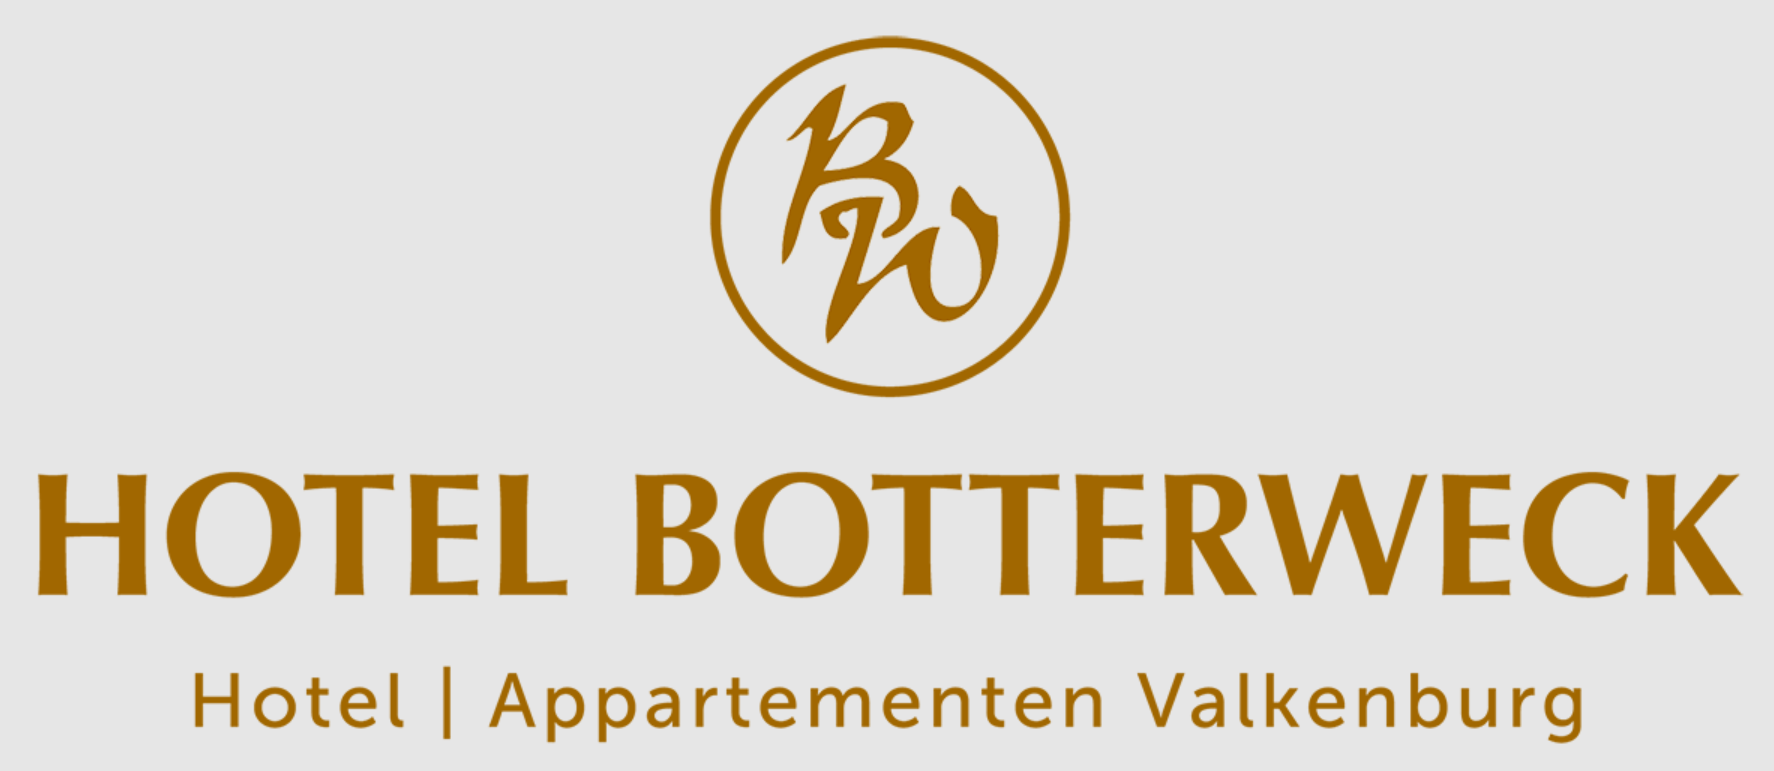 logo hotel botterweck valkenburg